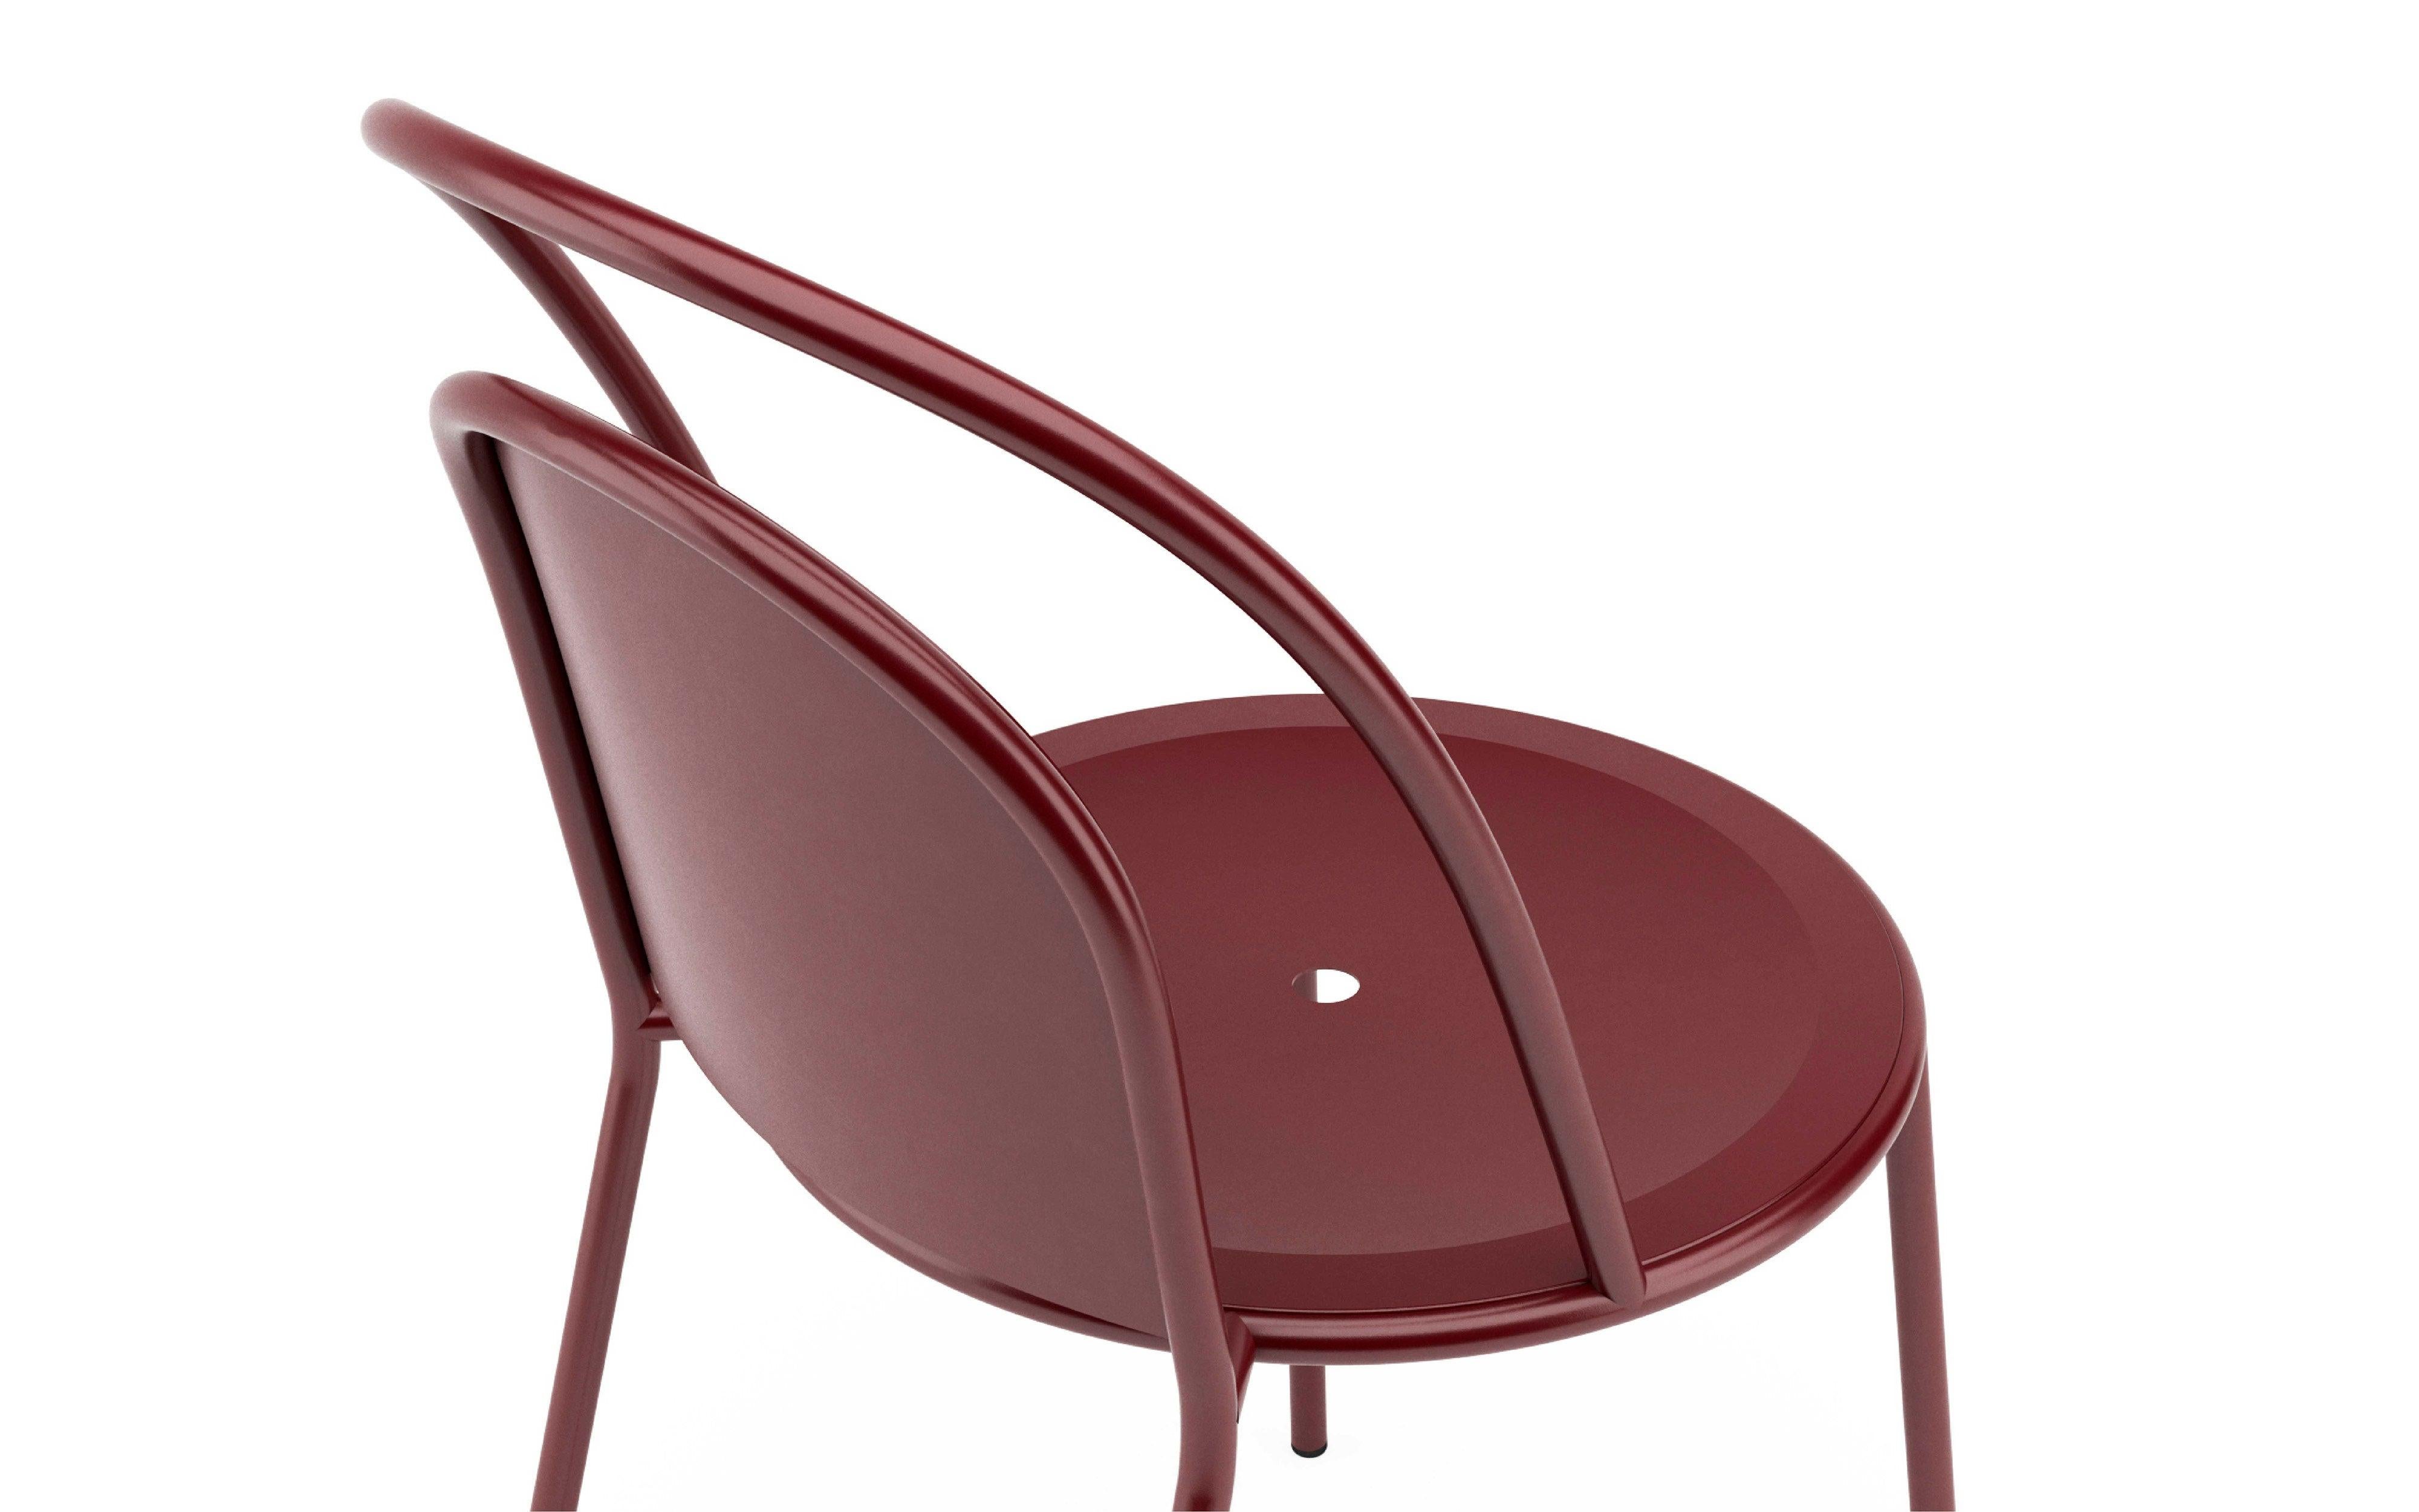 Das Design des Dune-Stuhls basiert auf der sich wiederholenden Form des Bogens, architektonisch und mathematisch. Dieser Stuhl hat eine elegante und leichte Ästhetik und ist sowohl für den Innen- als auch den Außenbereich geeignet. Entworfen von